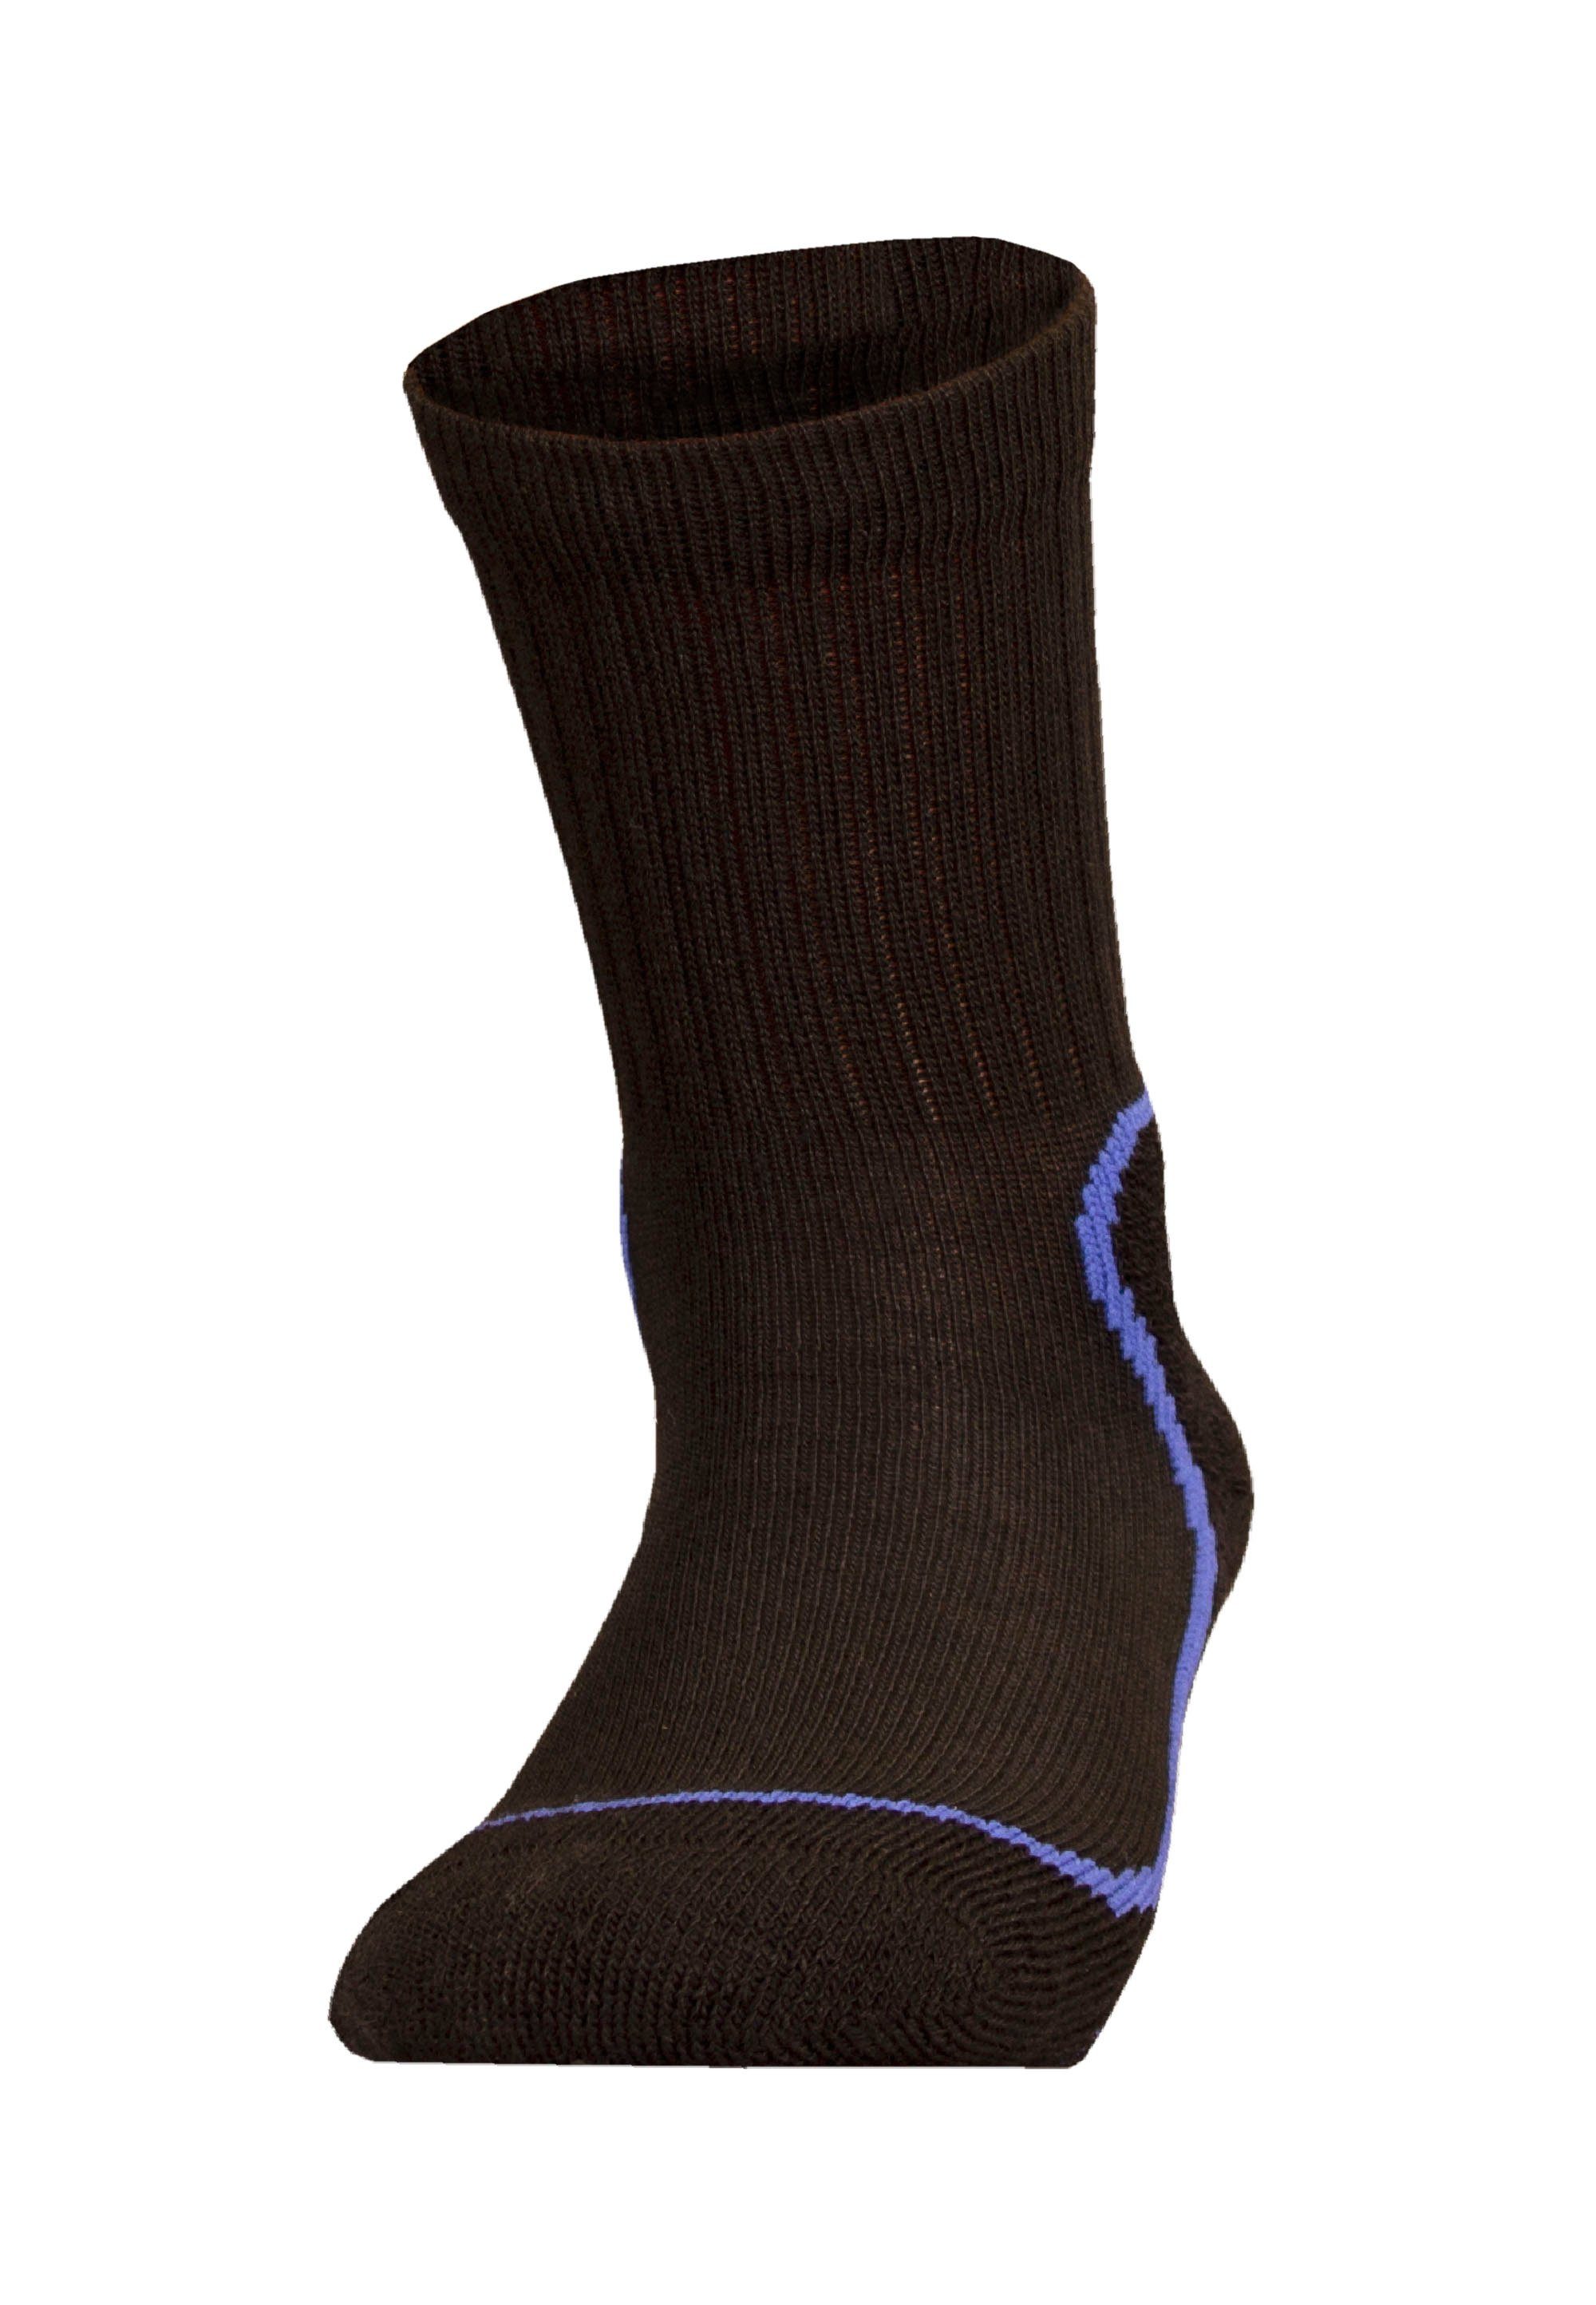 mit mehrlagiger JR und KEVO schwarz-blau UphillSport Coolmax Struktur Socken (1-Paar)